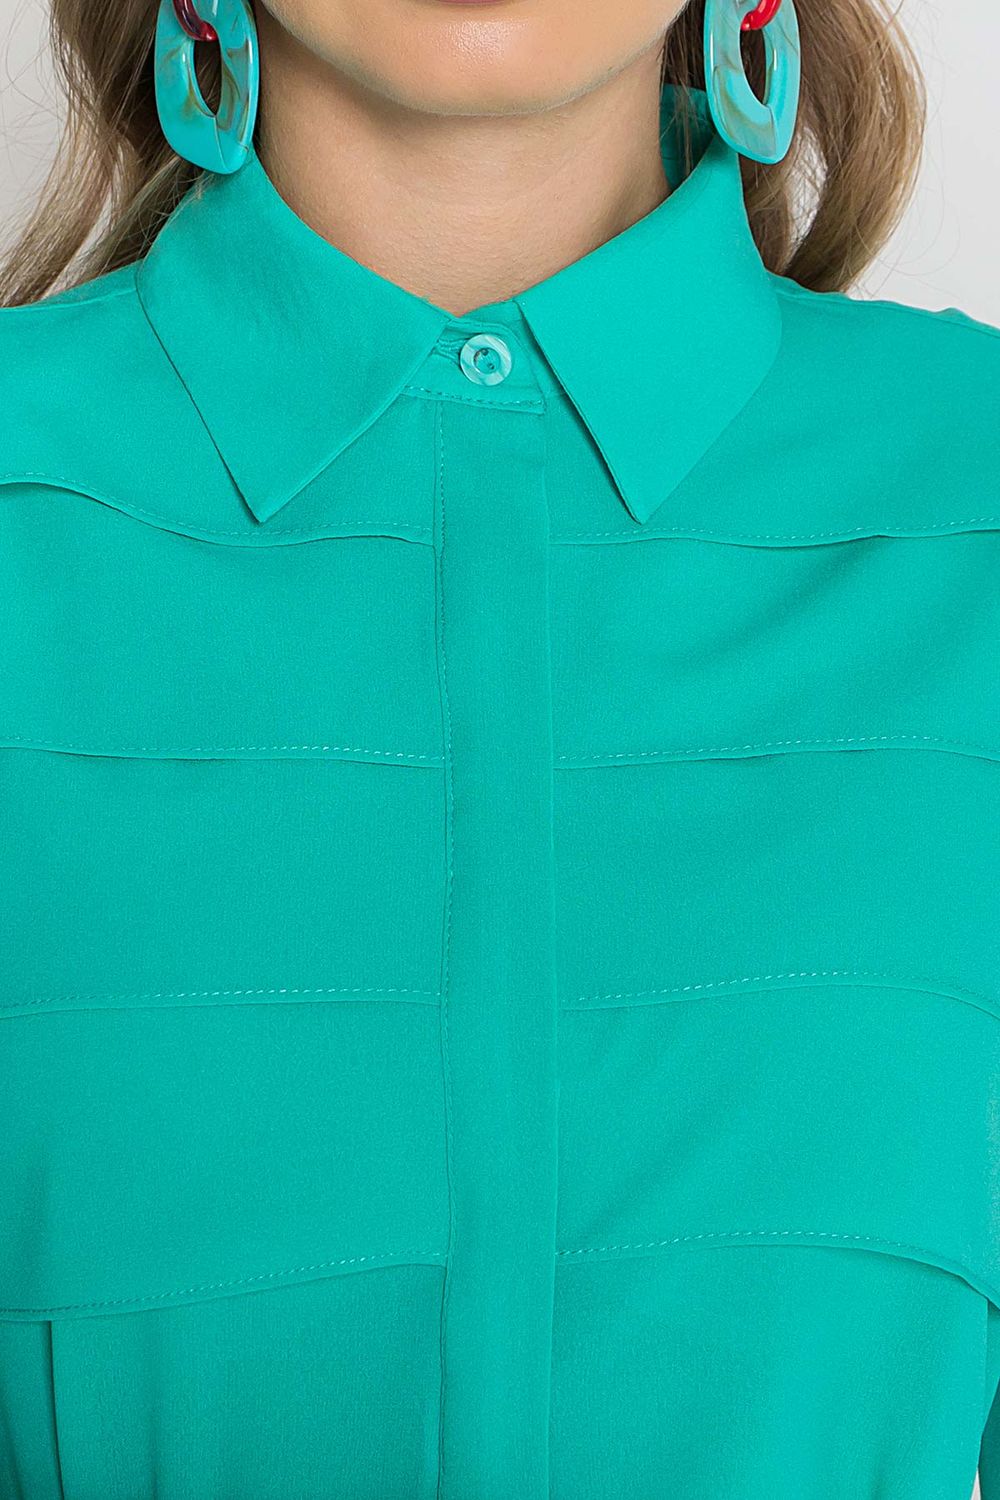 Модна блузка з креп-шифону м'ятного кольору - фото